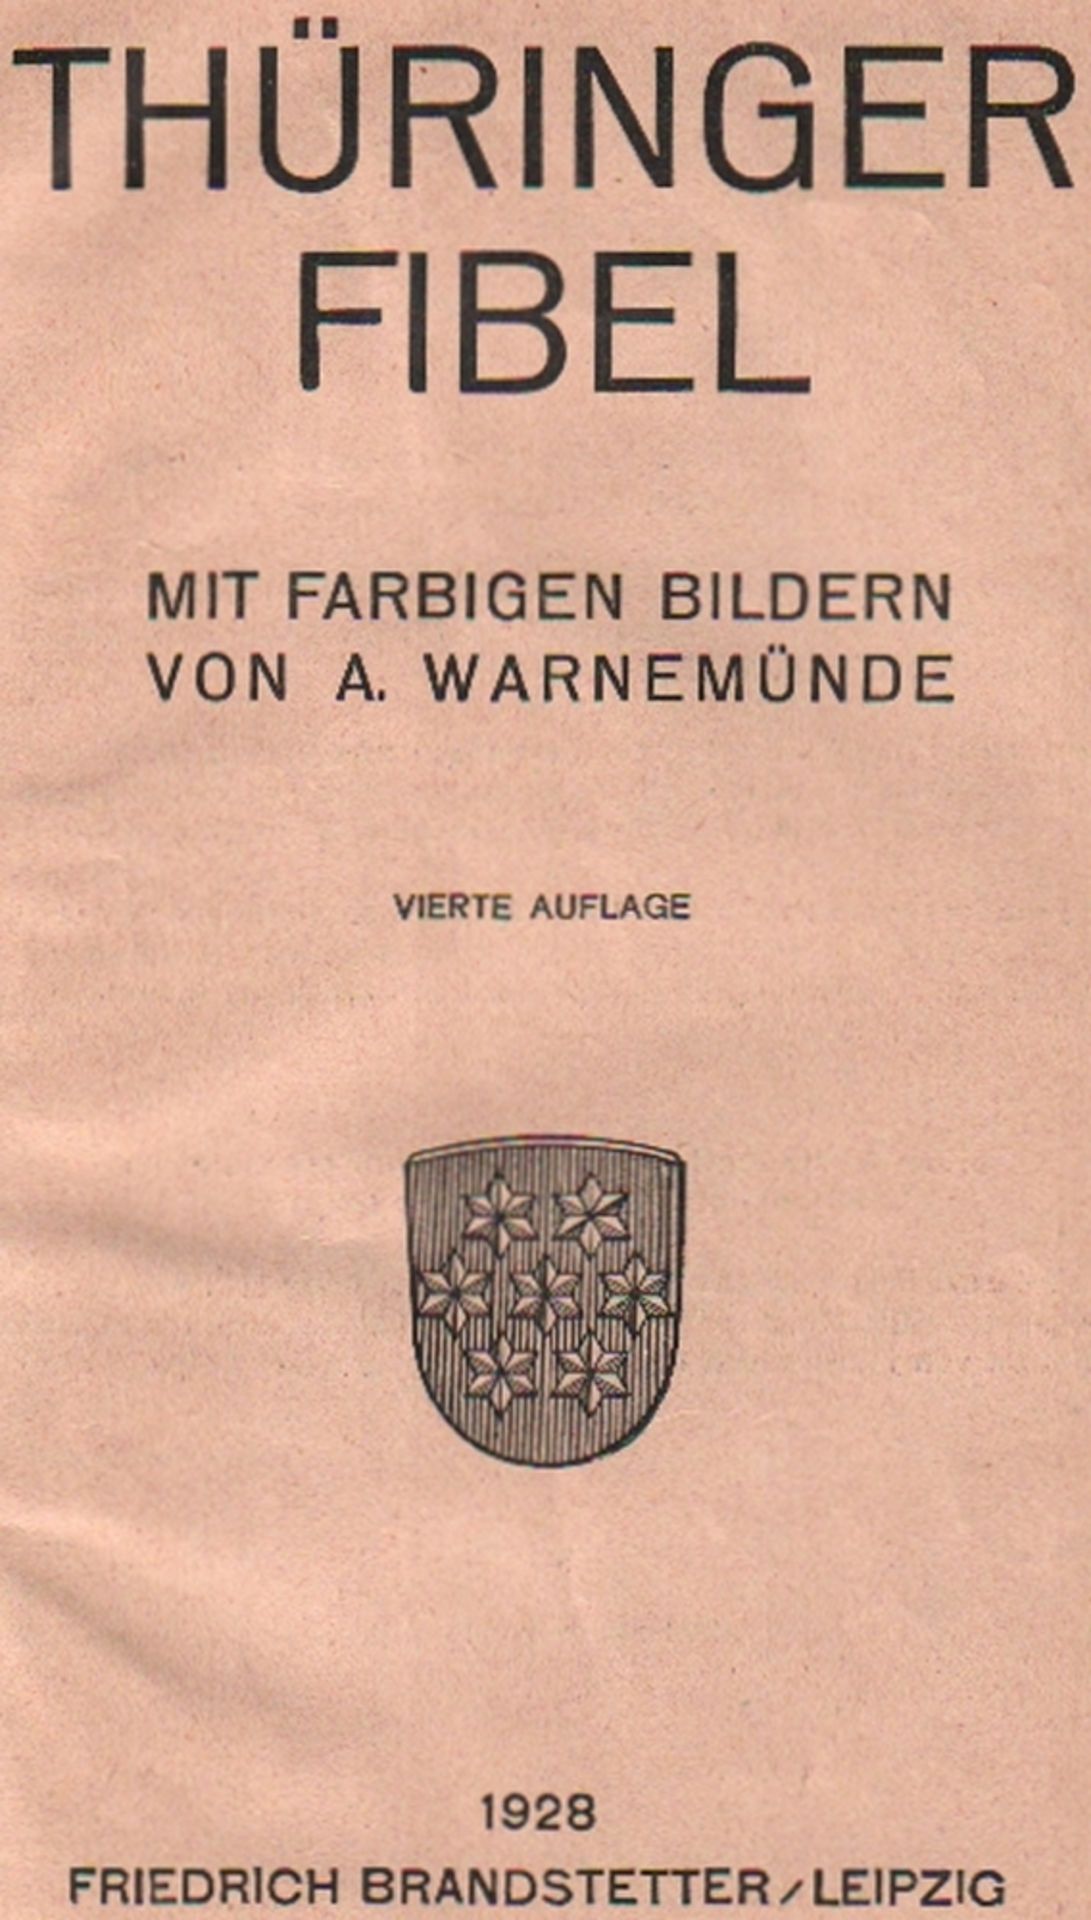 Fibel. Thüringer Fibel. 4. Auflage. Leipzig, Brandstetter, 1928. 8°. Mit farbigen Bildern von A.